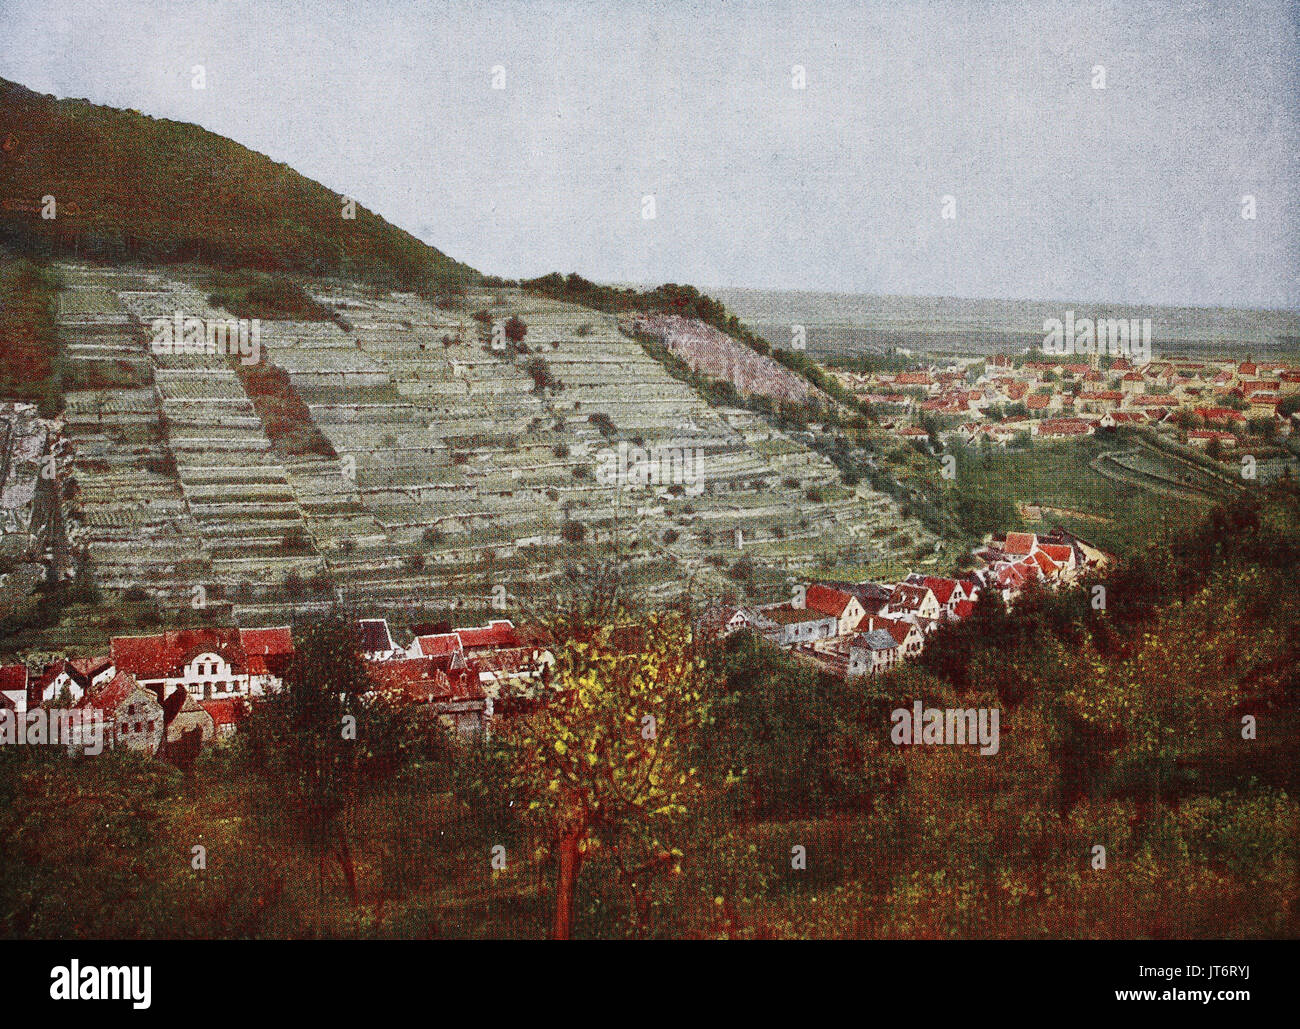 Foto storiche di Bad Duerkheim, Germania, digitale migliorata la riproduzione di un immagine pubblicata tra 1880 - 1885 Foto Stock